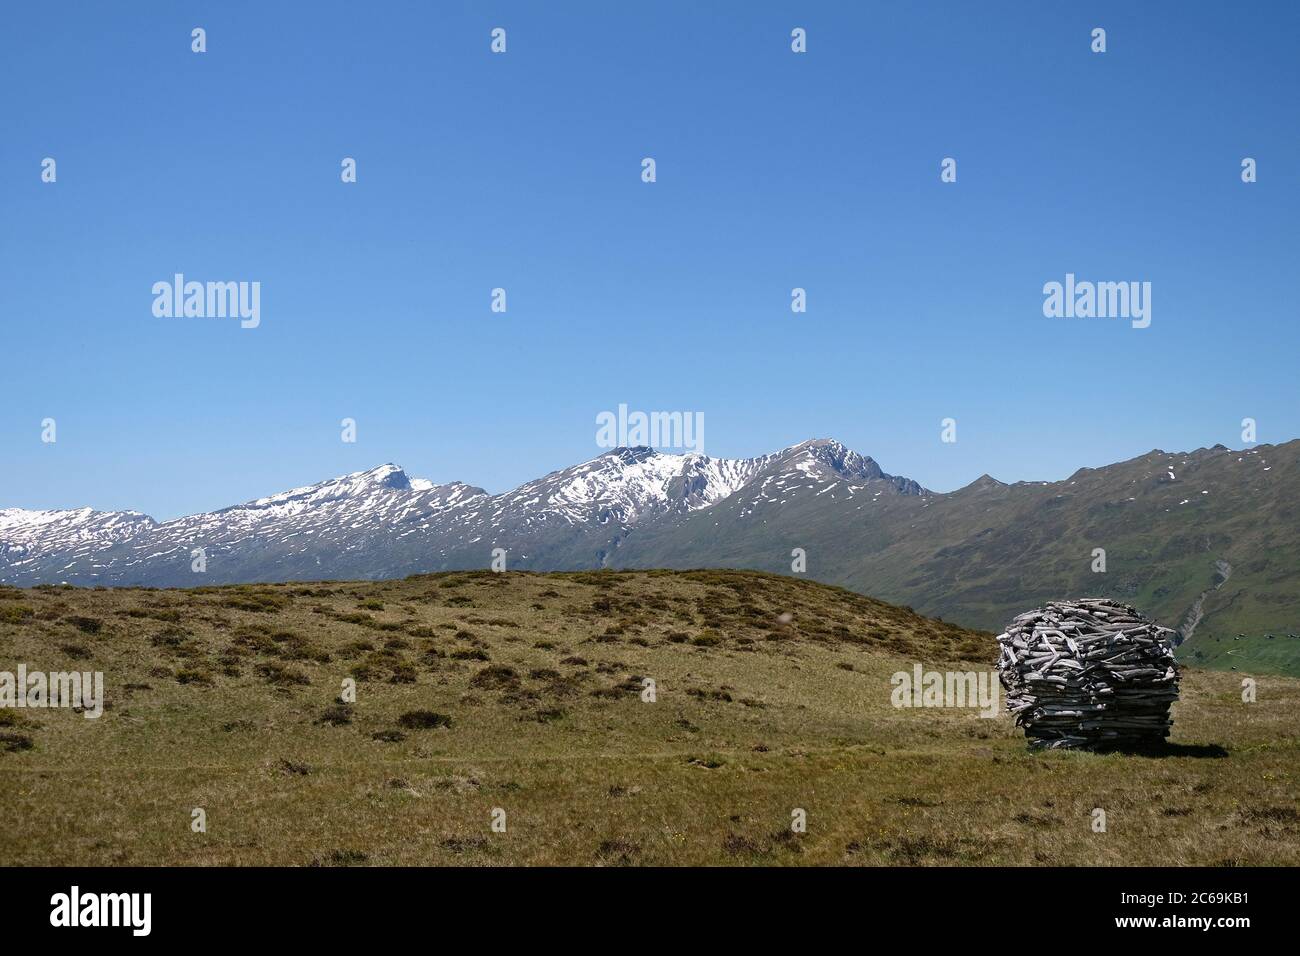 Alluviale Holzkugel auf dem Glaser-Grat, Glaspass, Naturpark Beverin,  Kanton Graubünden, Schweiz Stockfotografie - Alamy